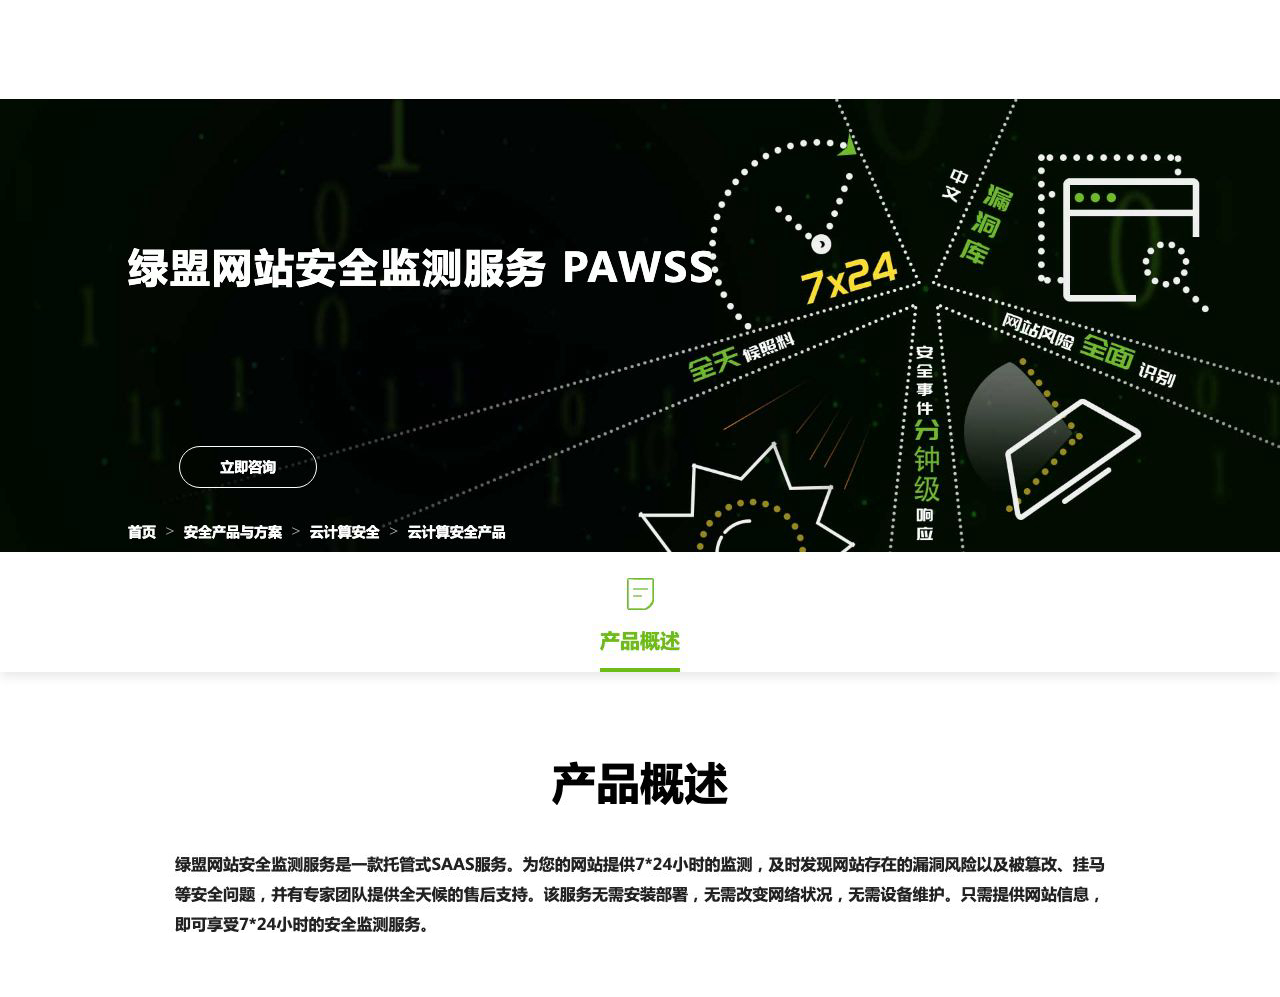 绿盟网站安全监测服务 PAWSS-解决方案介绍